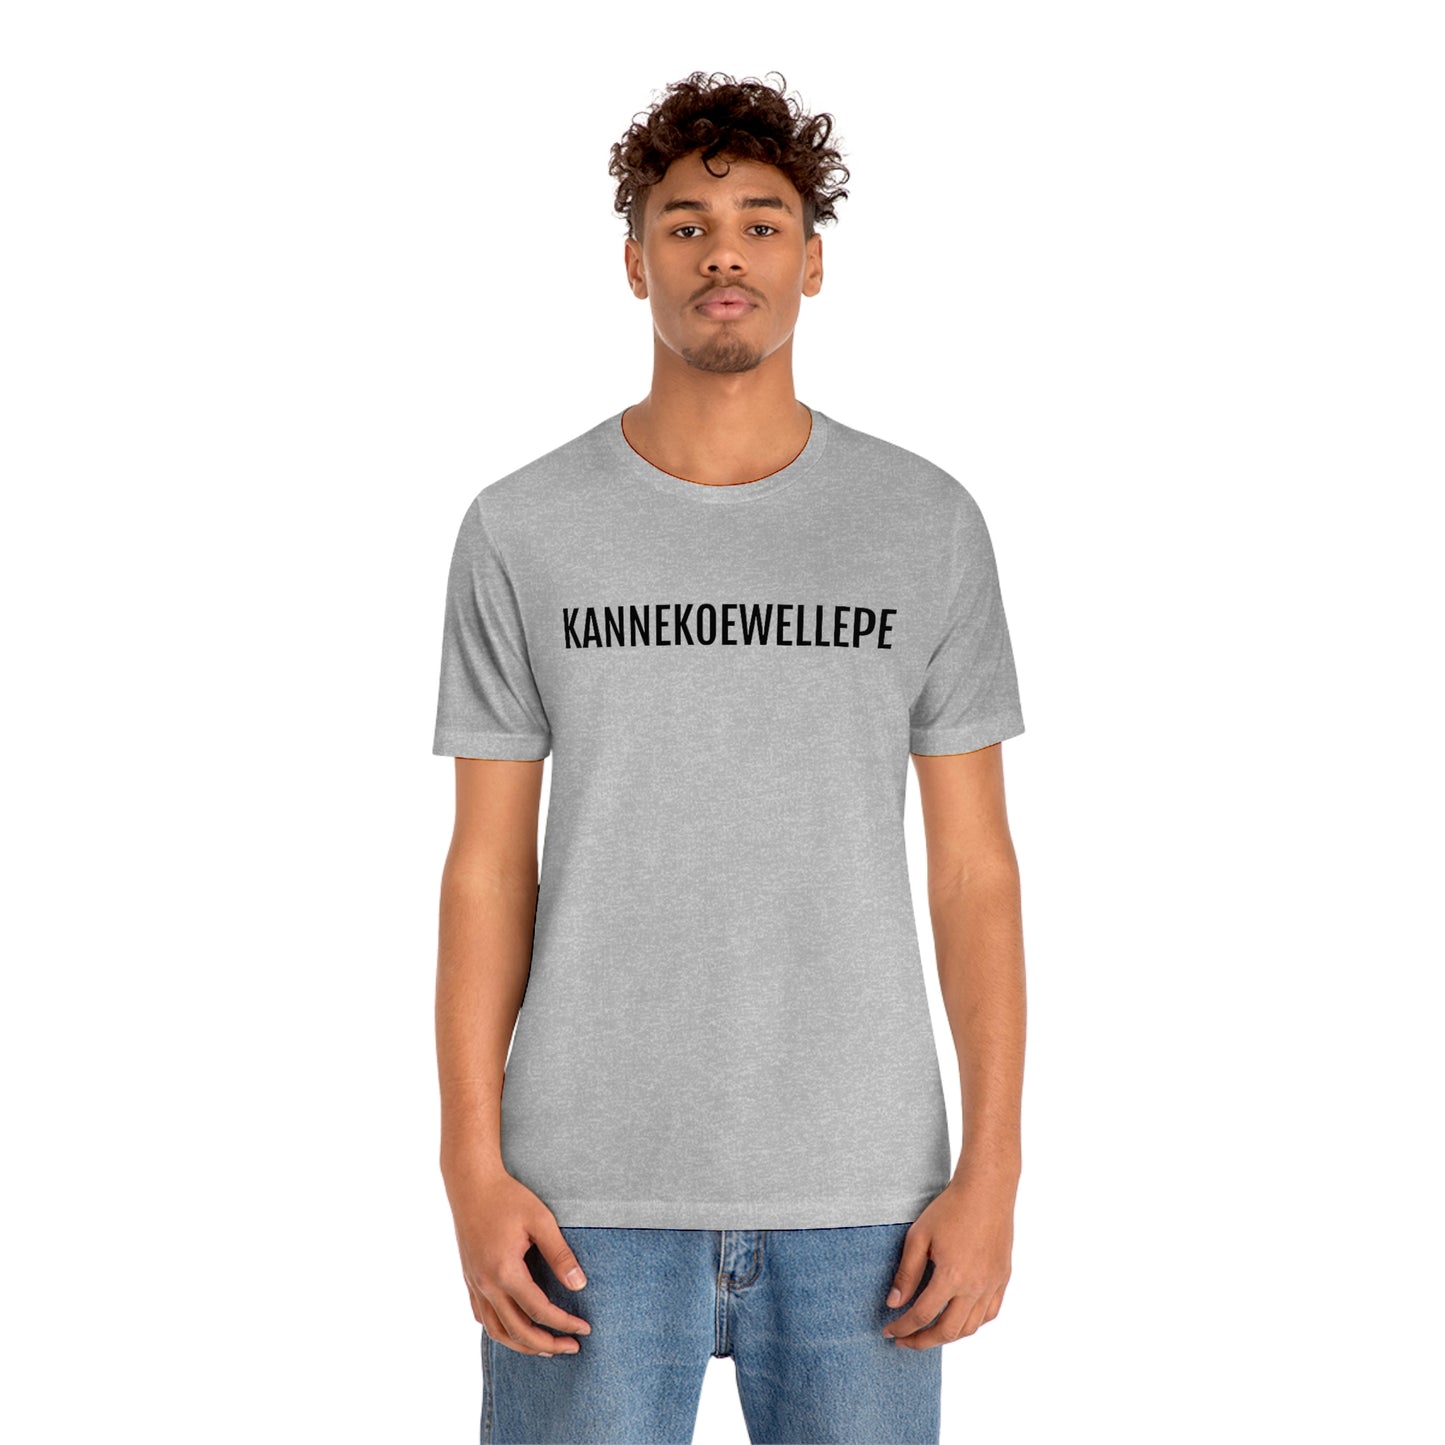 KANNEKOEWELLEPE | Unisex T-Shirt uit Antwerpen